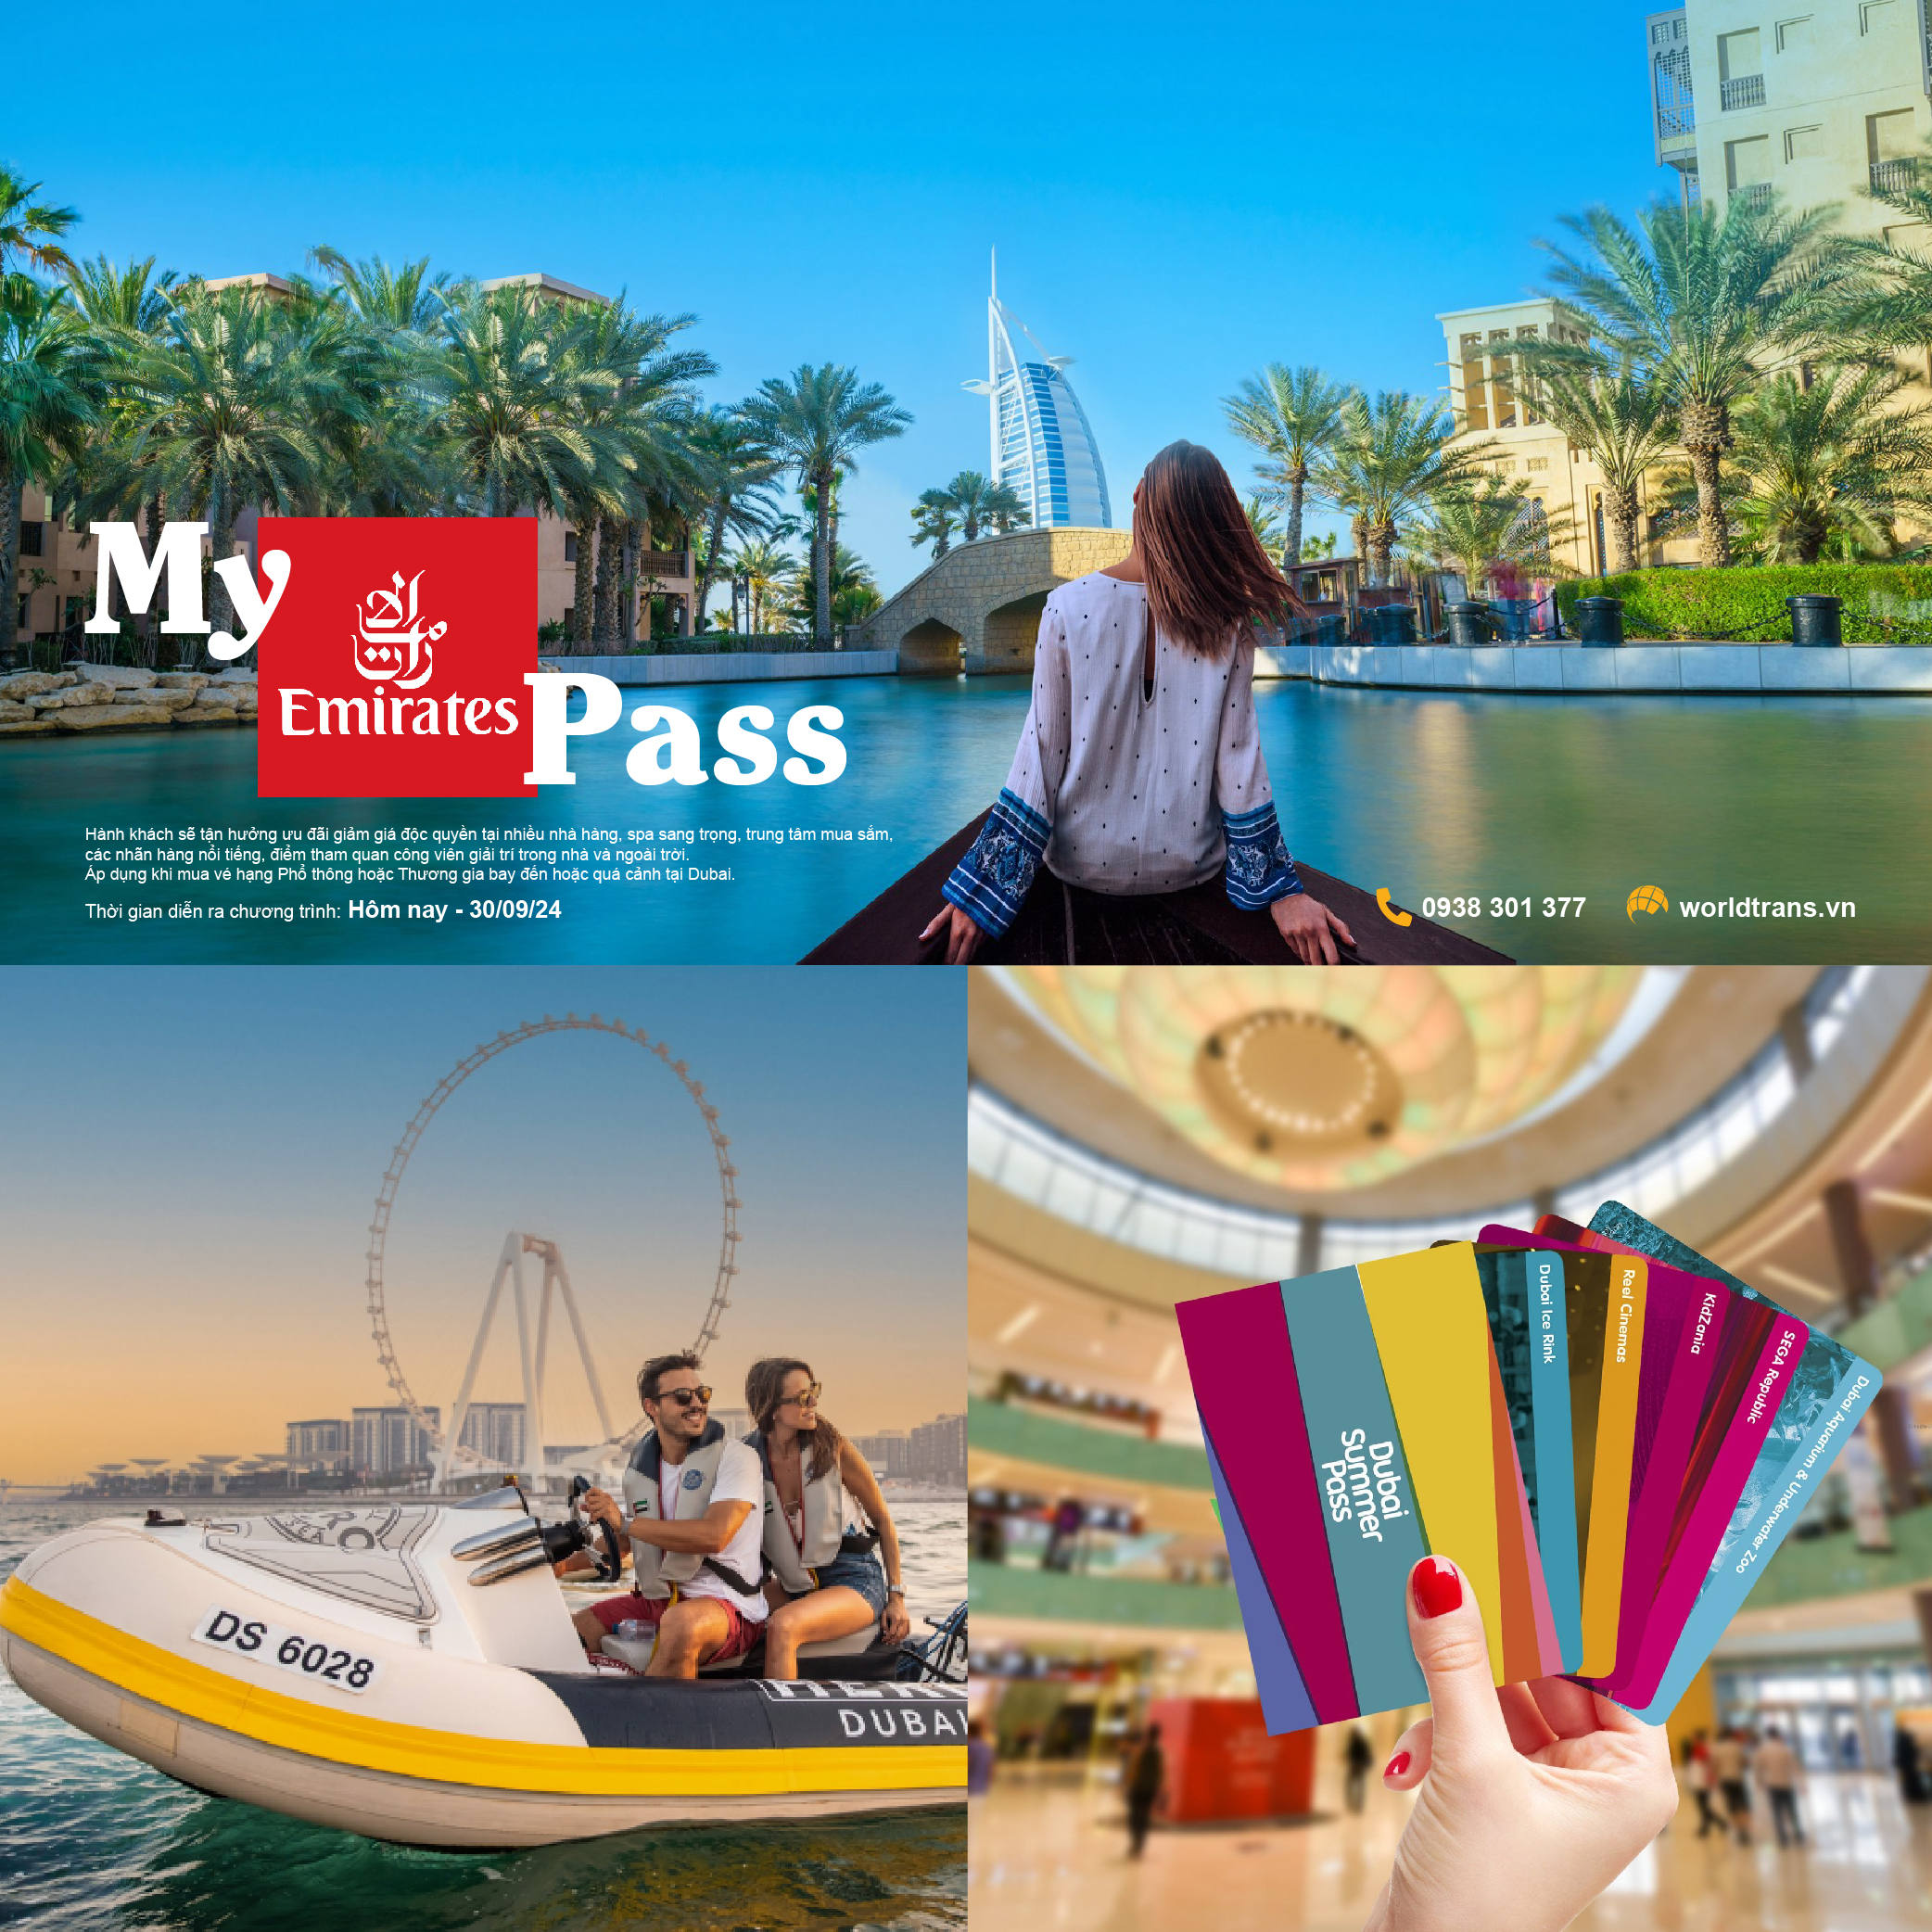 Trải nghiệm My Emirates Pass ở Dubai và UAE cùng WorldTrans